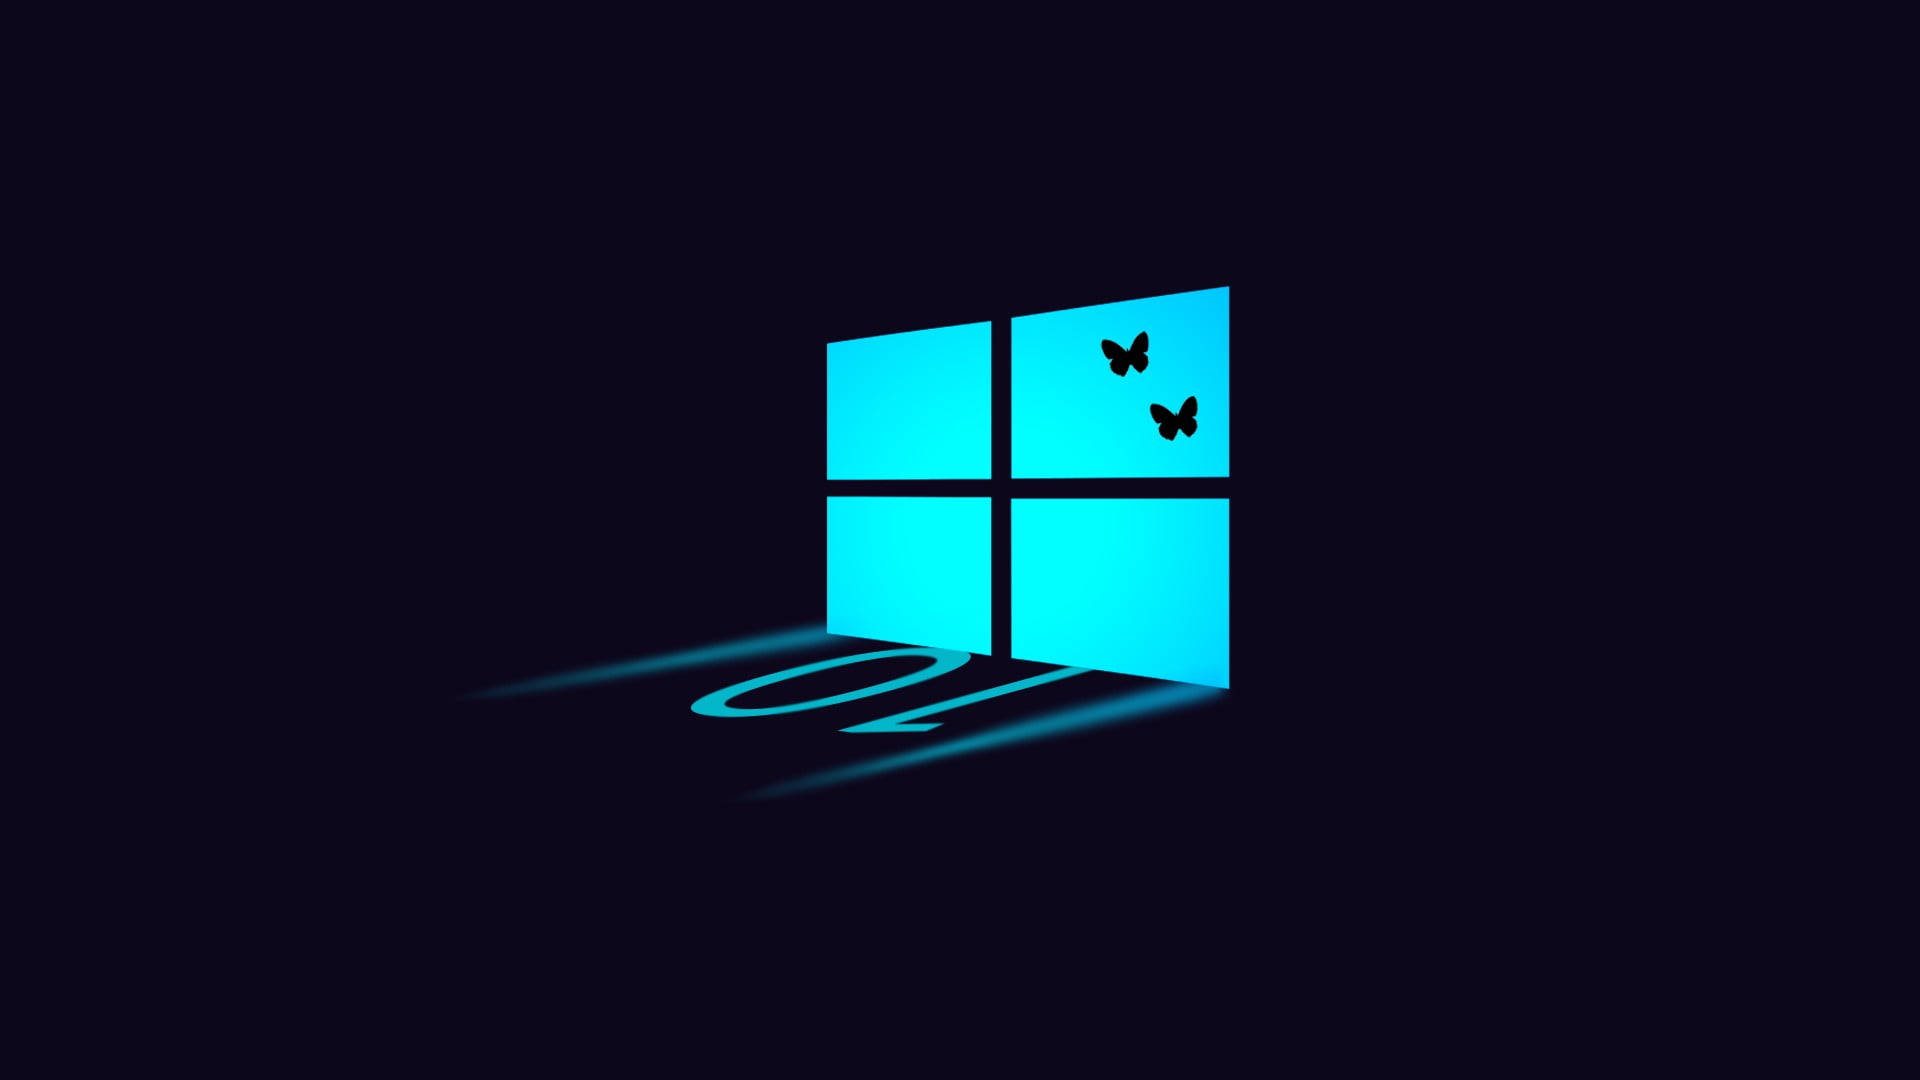 Dark Windows 10 Logo With Butterflies Wallpaper